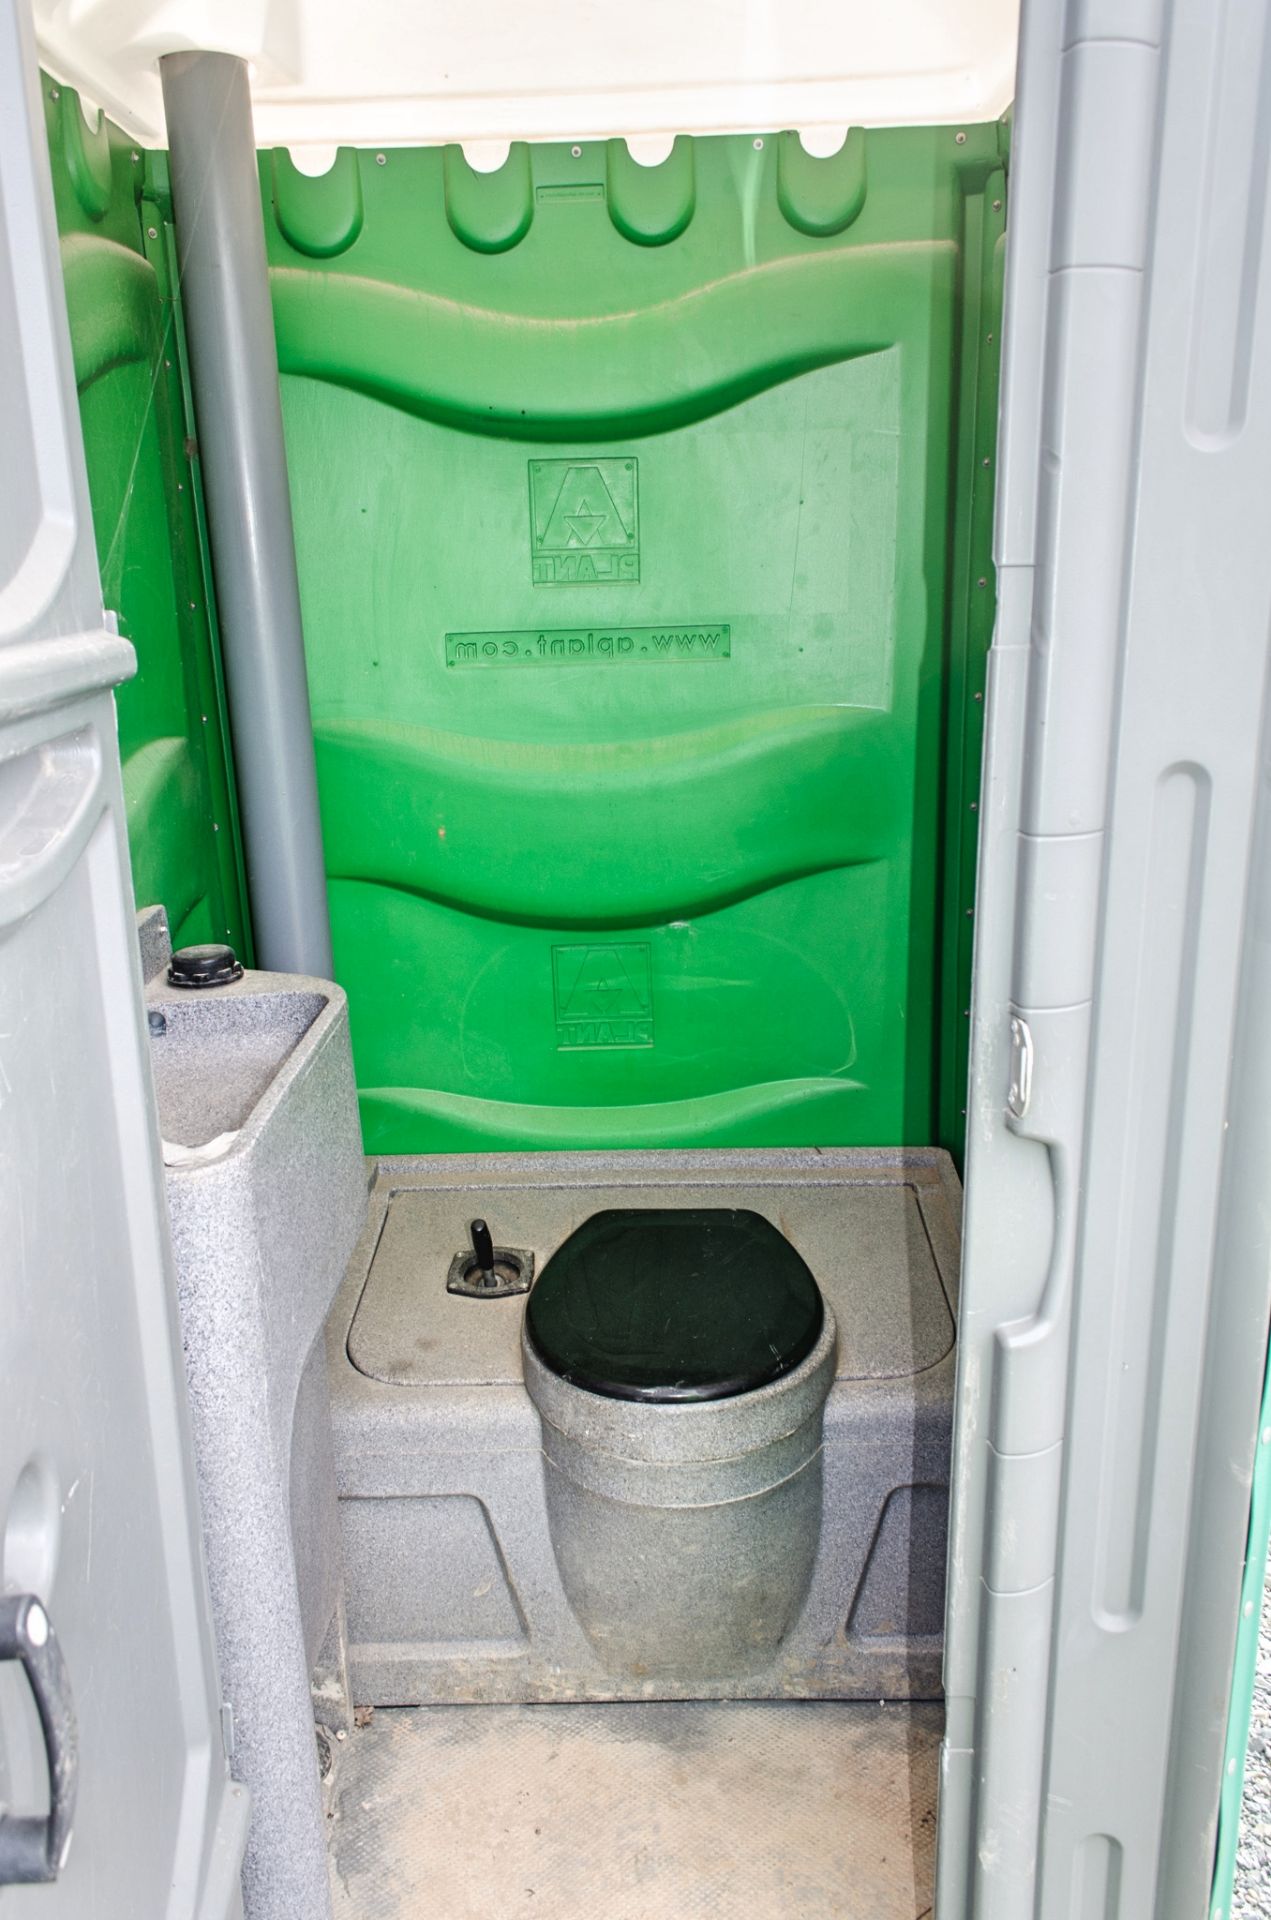 Plastic portable toilet unit A584206 - Image 3 of 3